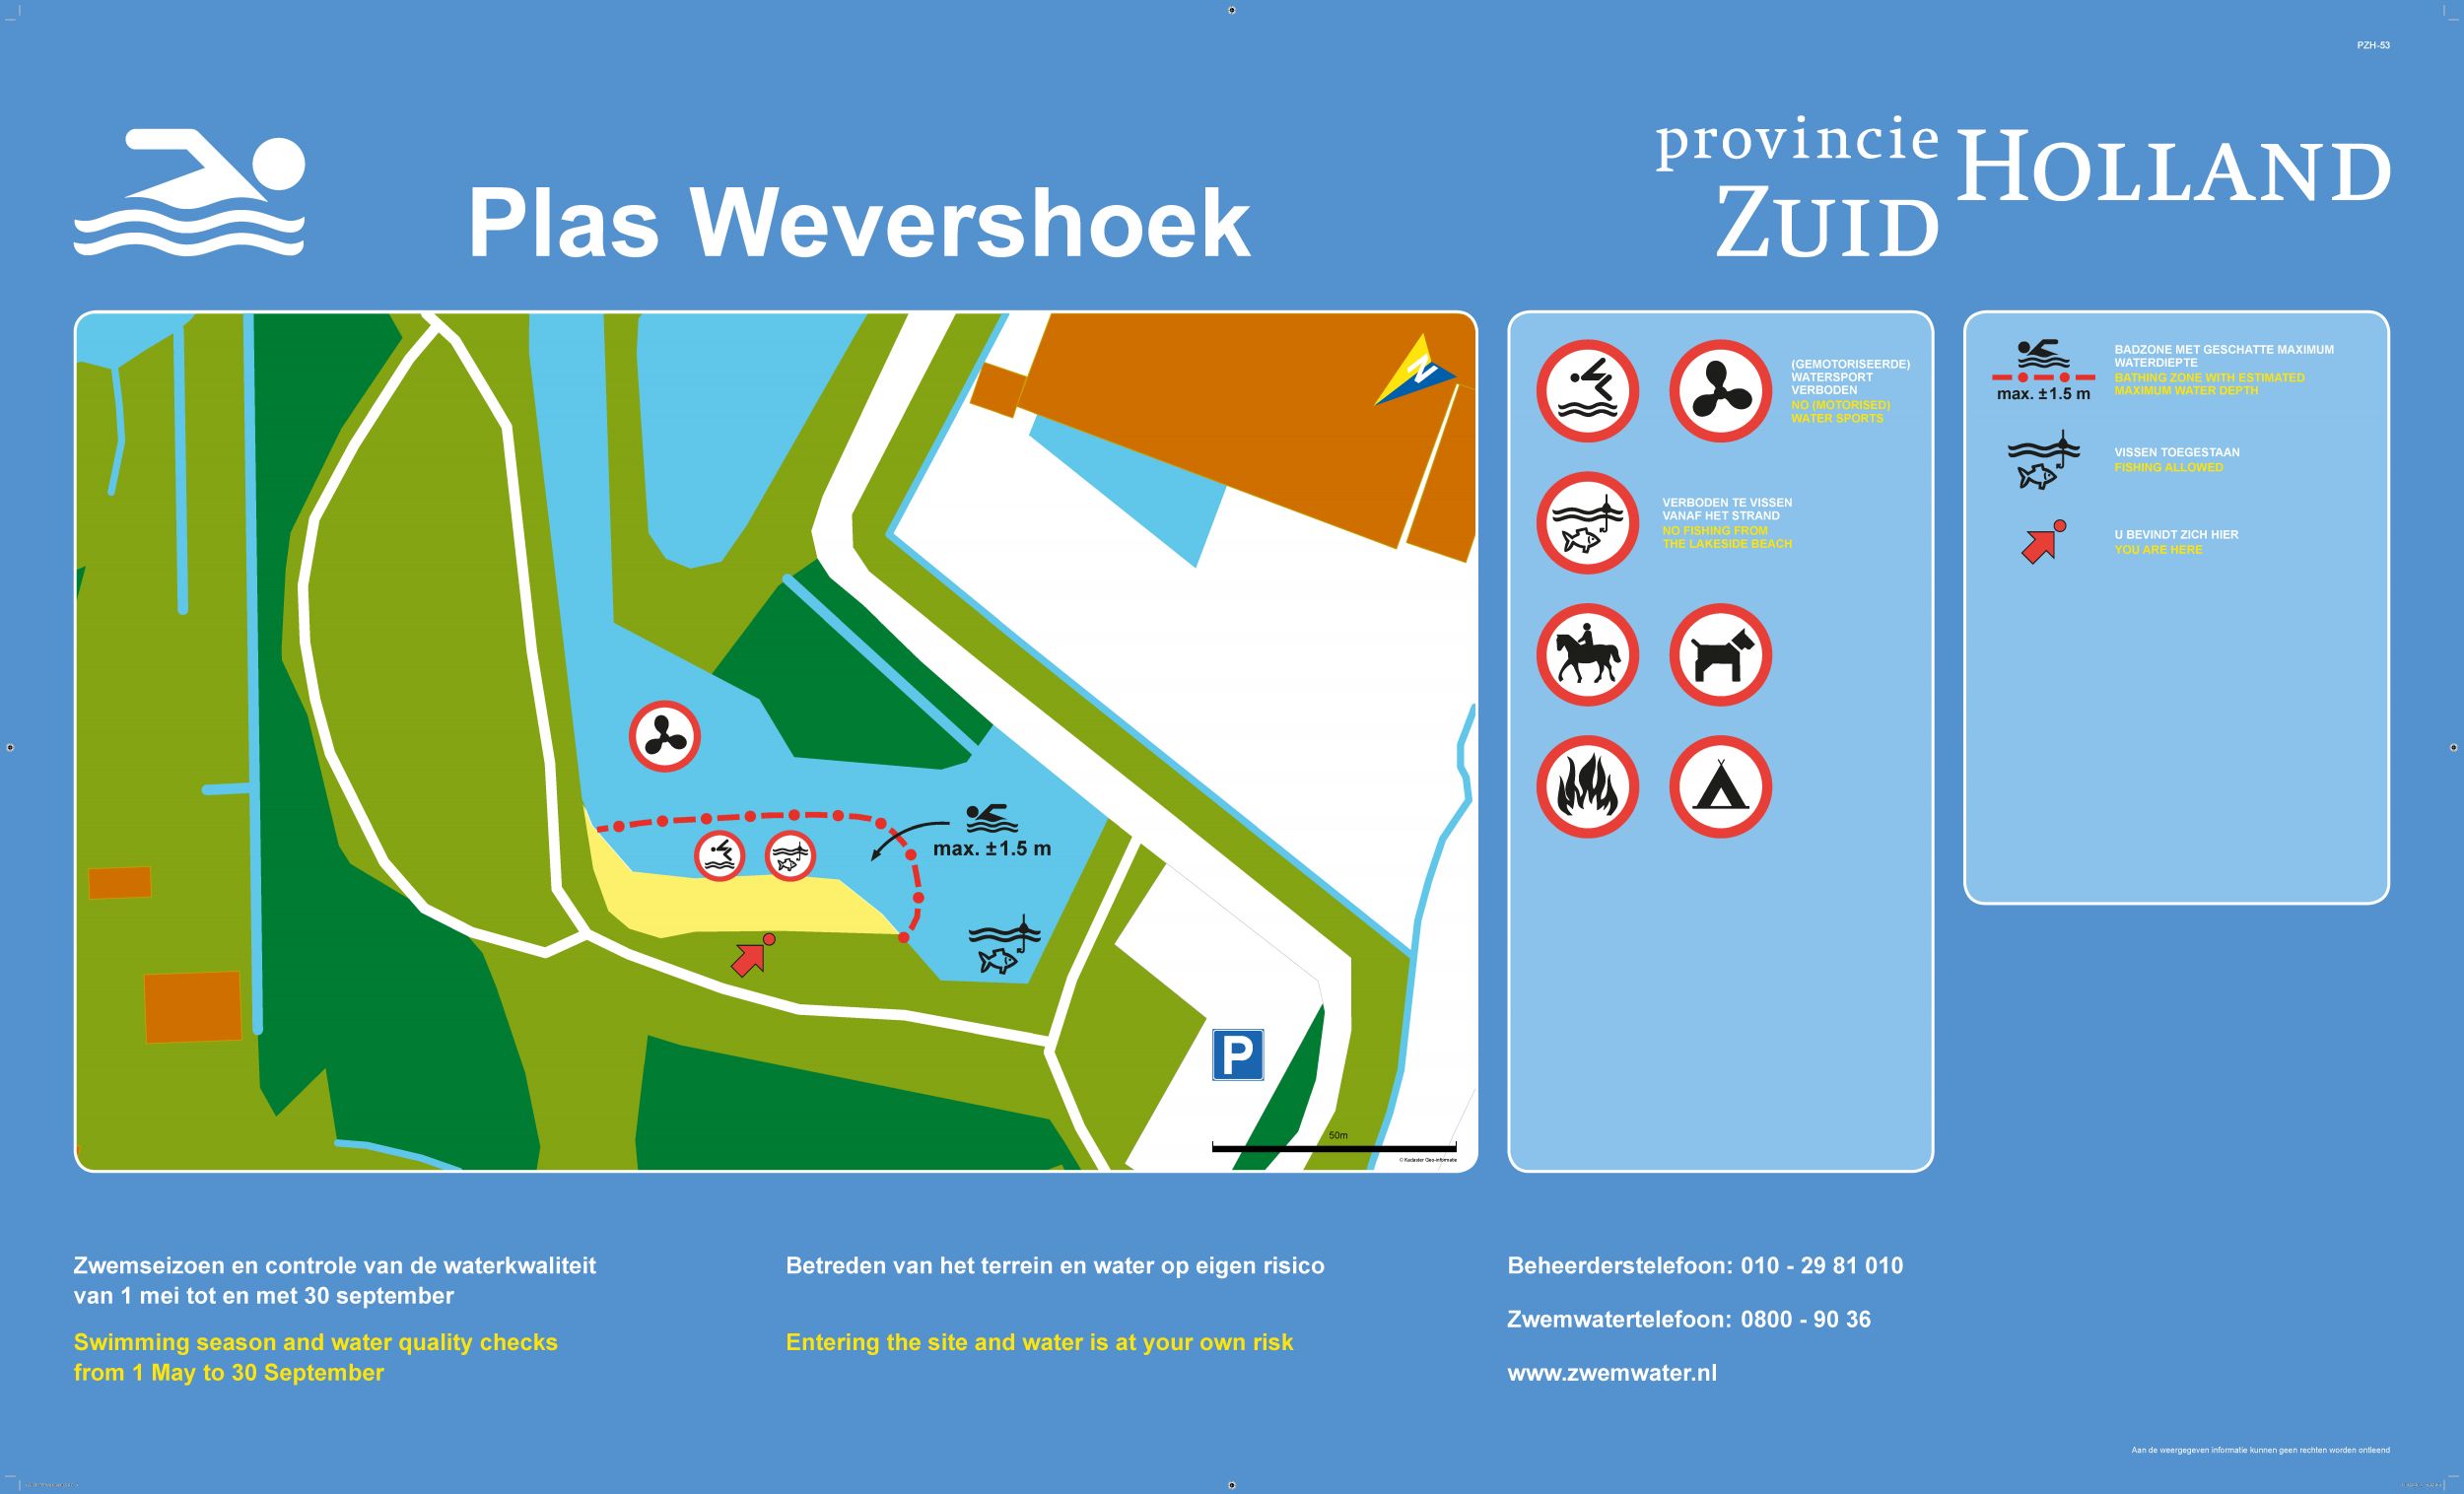 Het informatiebord bij zwemlocatie Plas Wevershoek